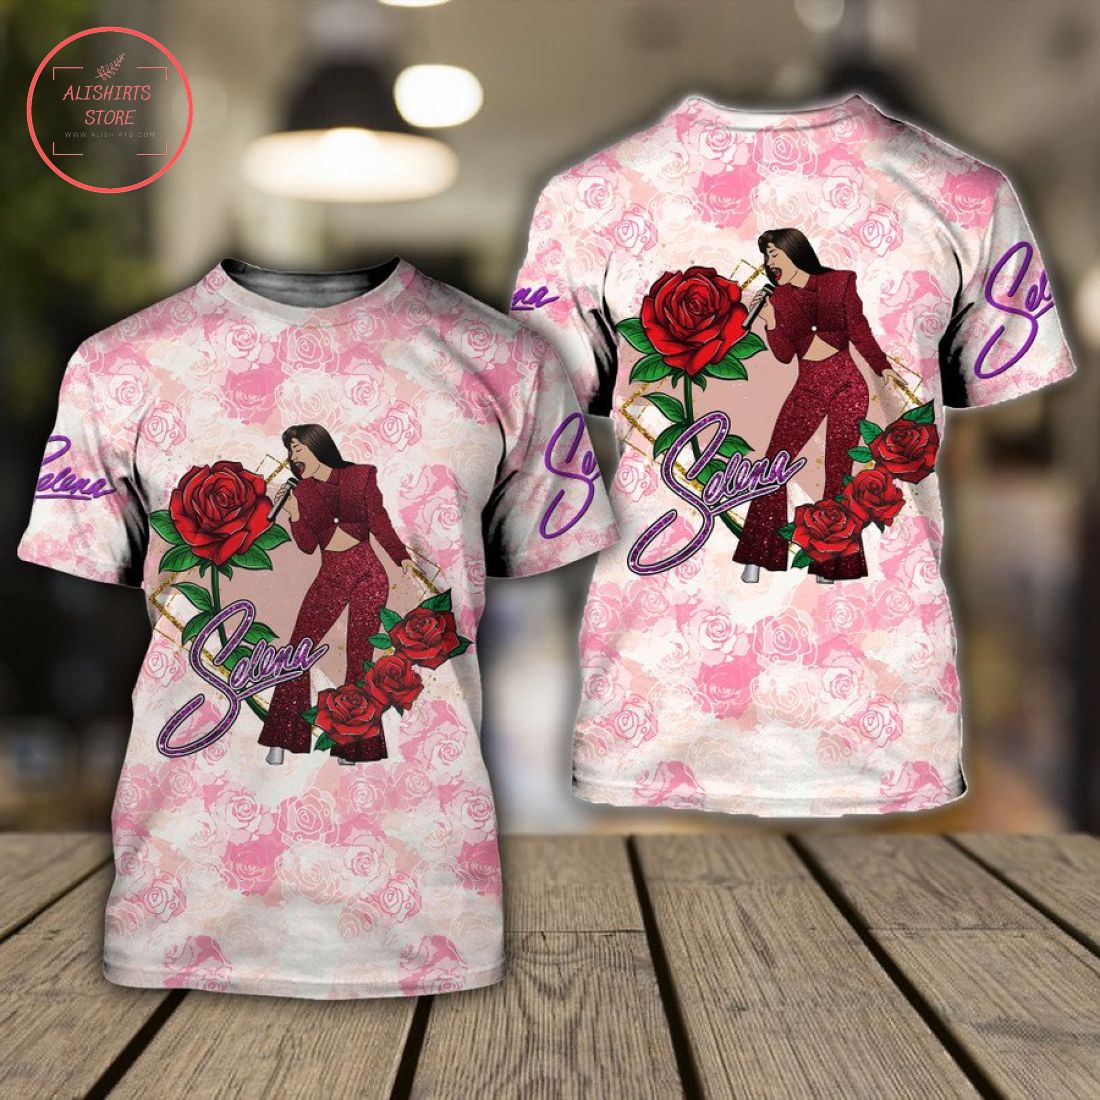 Selena Quintanilla and Rose All Over Printed Shirts